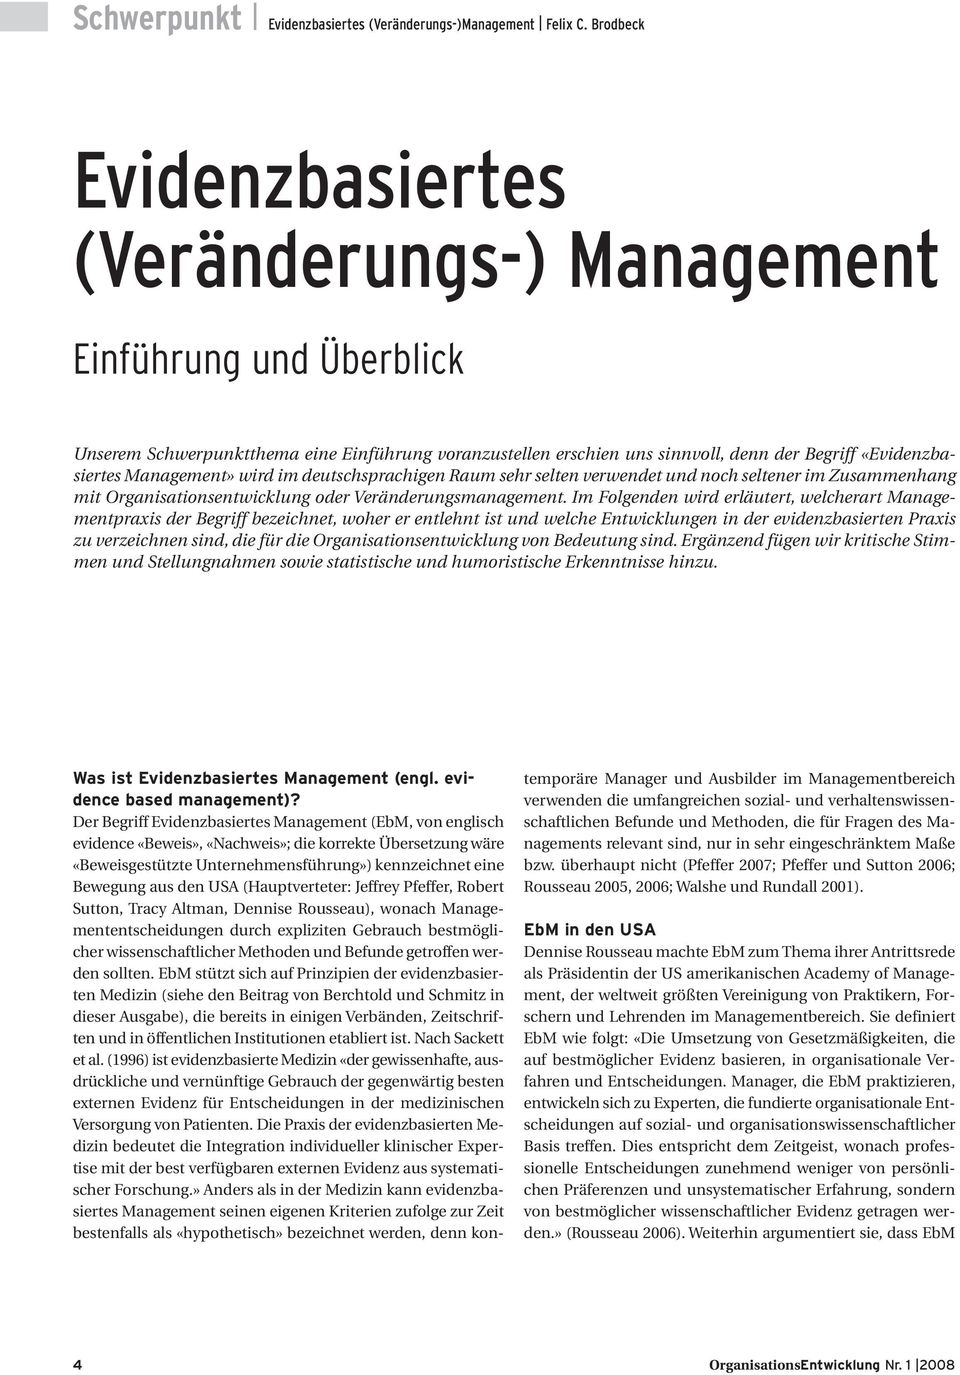 Management» wird im deutschsprachigen Raum sehr selten verwendet und noch seltener im Zusammenhang mit Organisationsentwicklung oder Veränderungsmanagement.